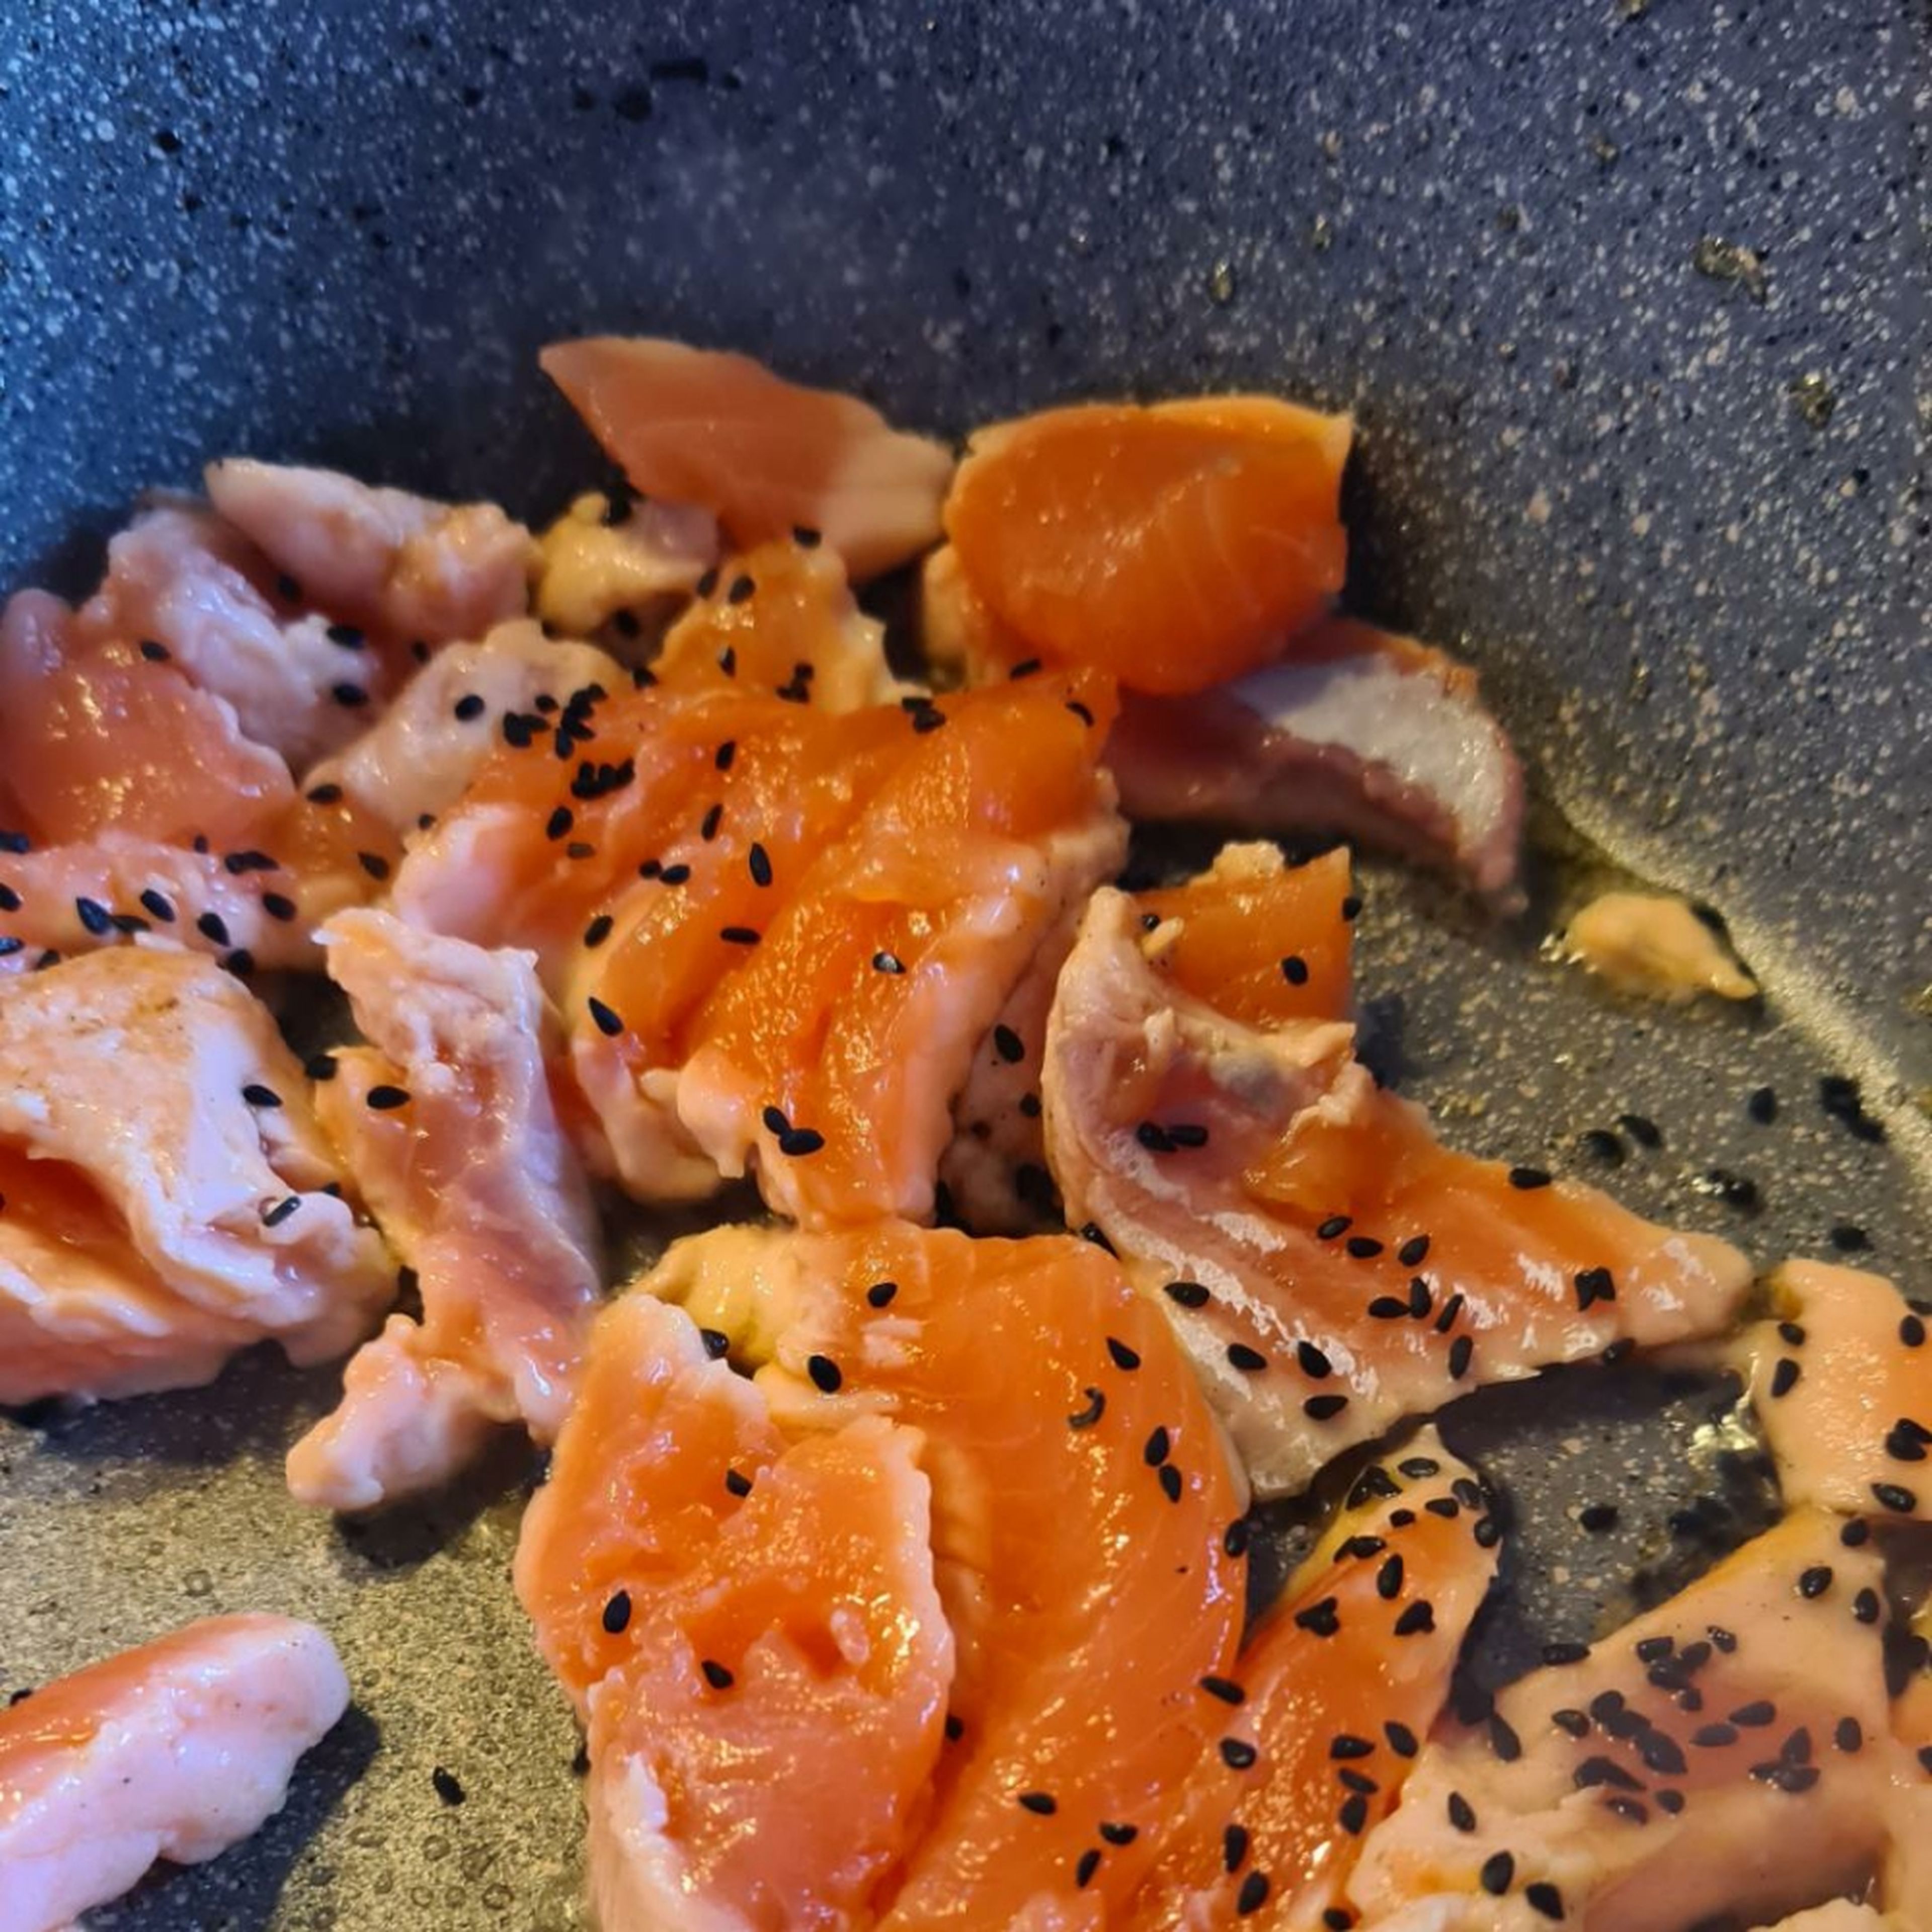 Die Lachsstreifen in Öl mit den Sesamsamen scharf anbraten, während die Nudeln kochen.